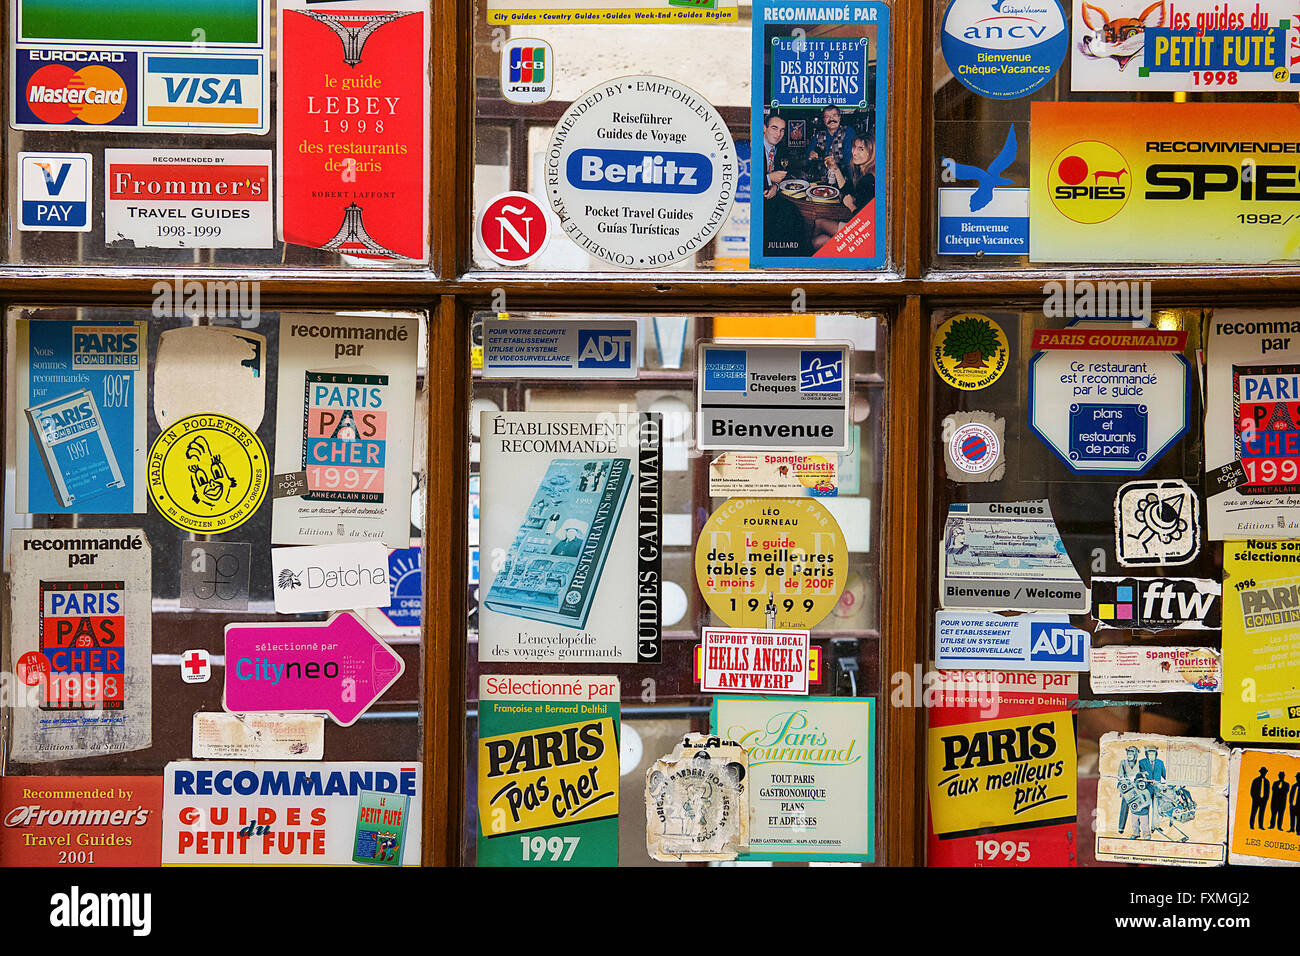 Guide viaggi adesivo sulla finestra, Parigi, Francia Foto Stock